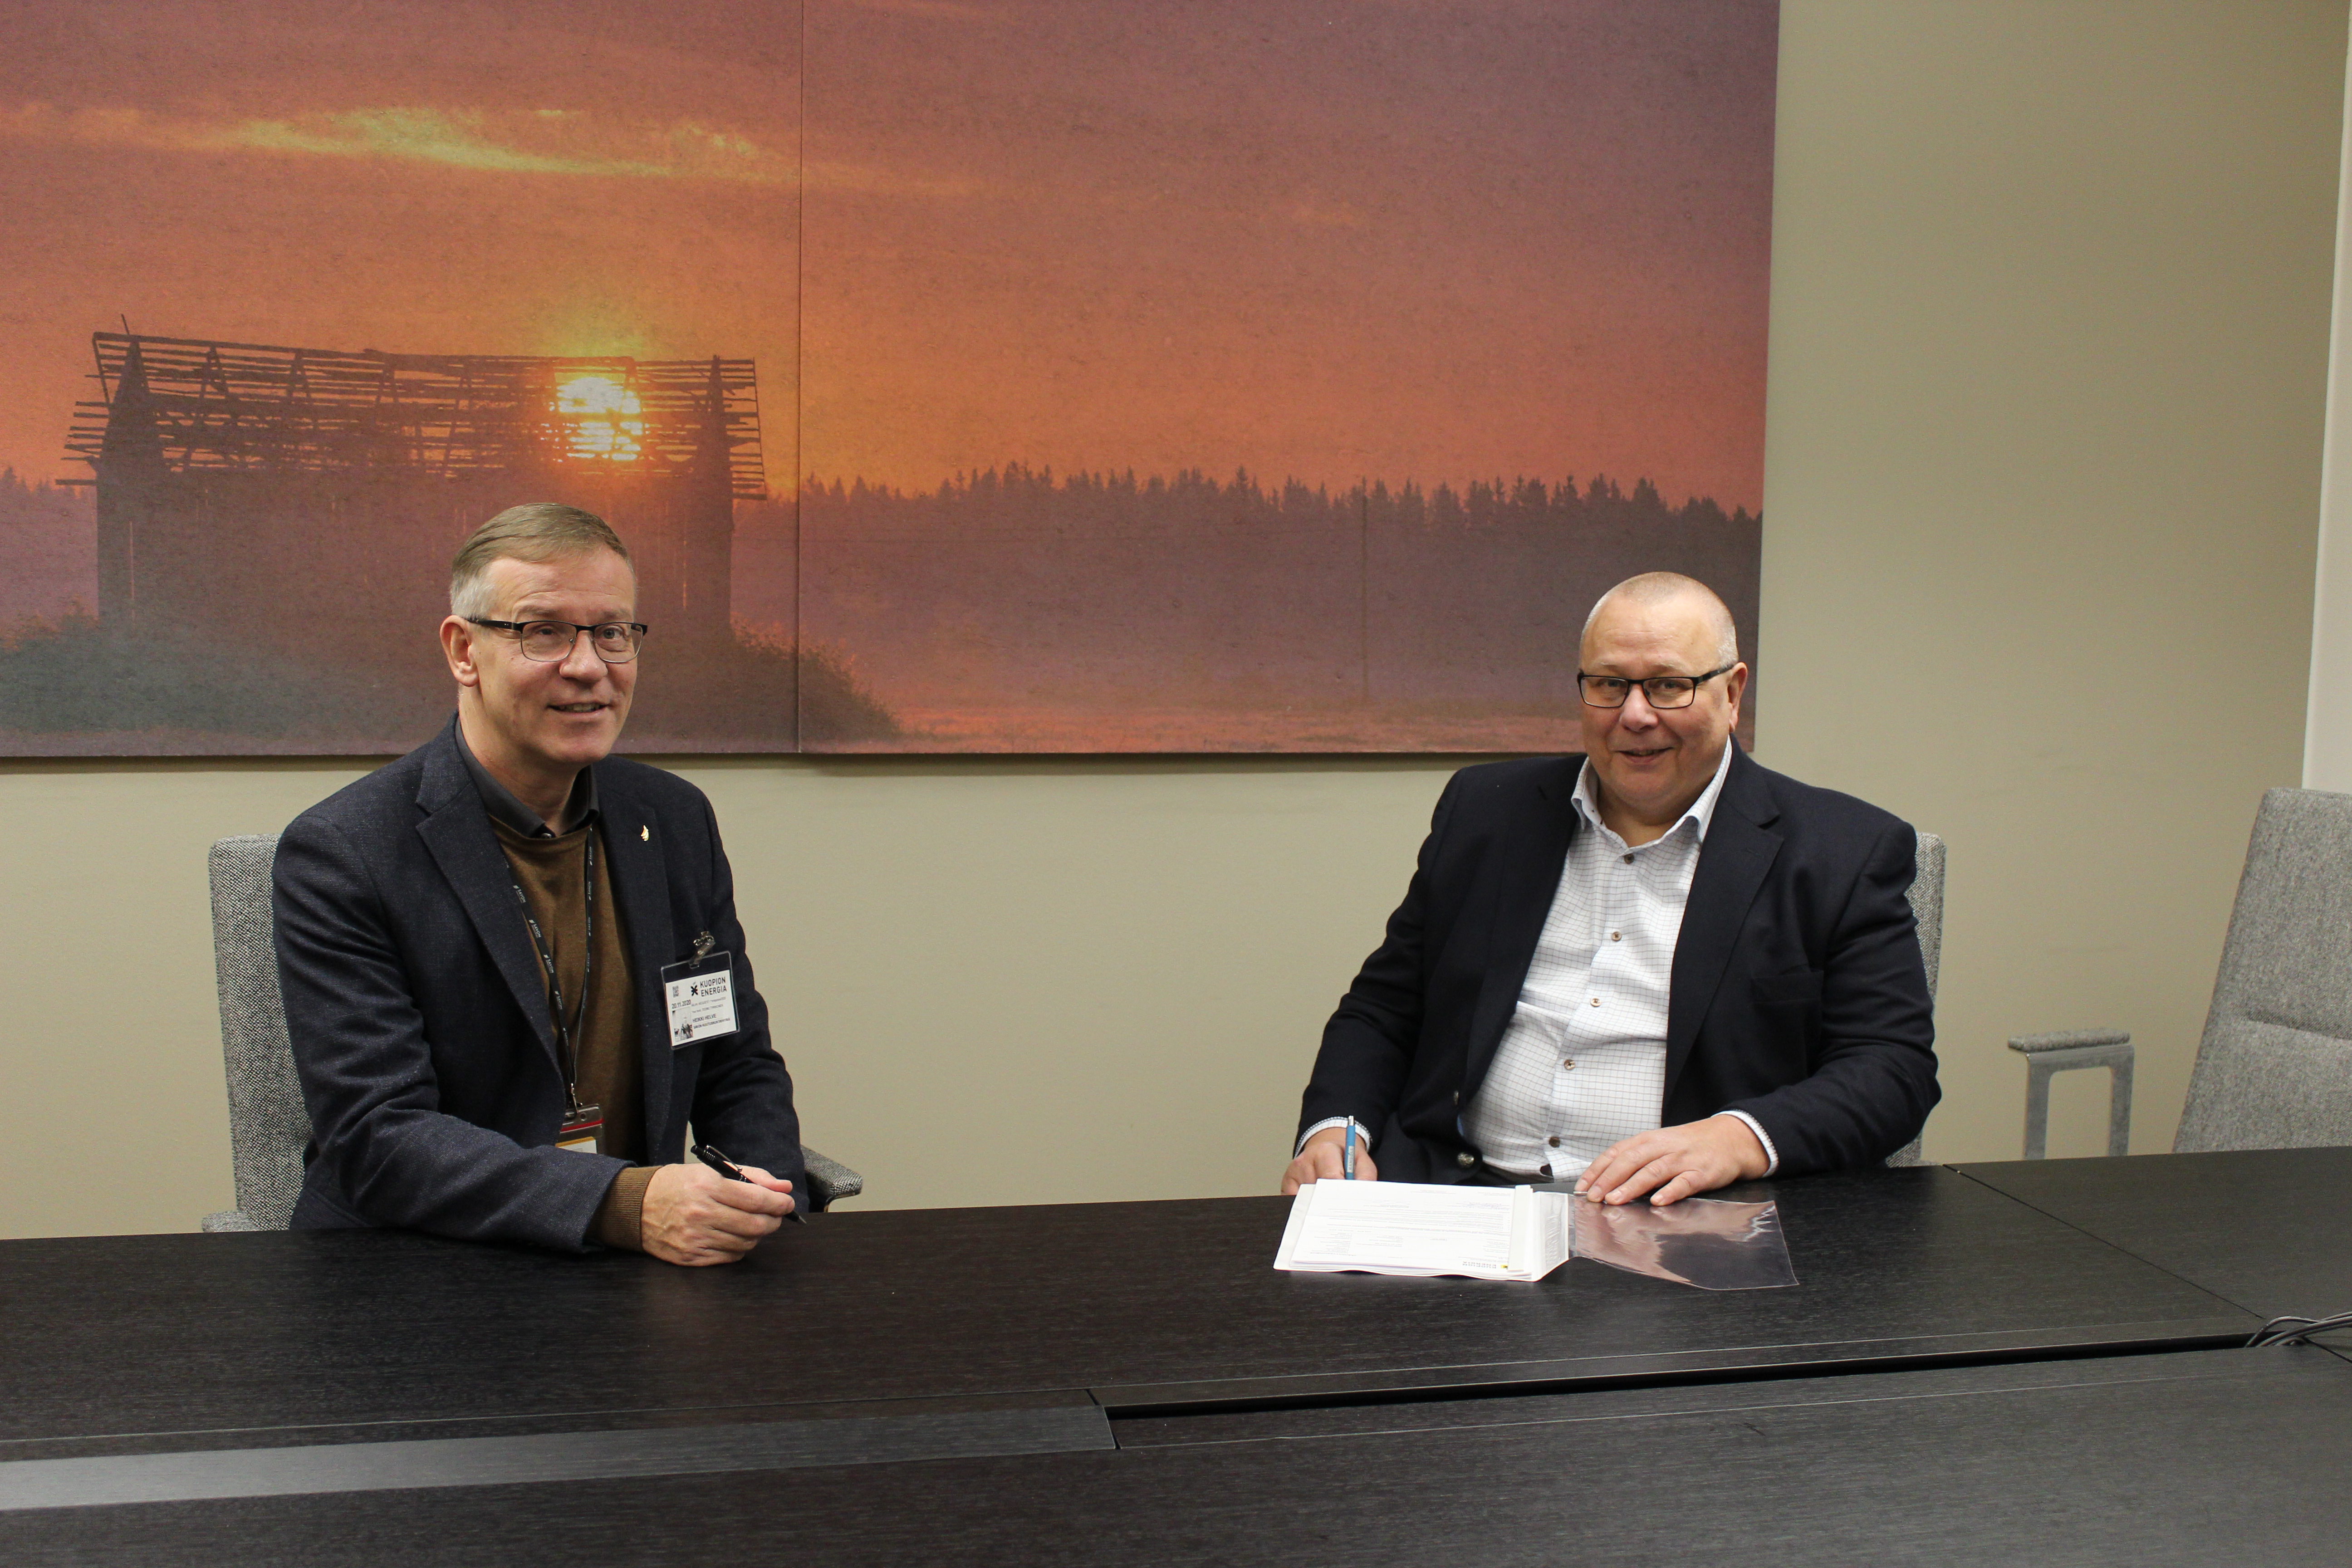 Savon koulutuskuntayhtymän johtaja Heikki Helve ja Kuopion energian toimistusjohtaja Esa Lindholm istuvat pöydän ääressä.